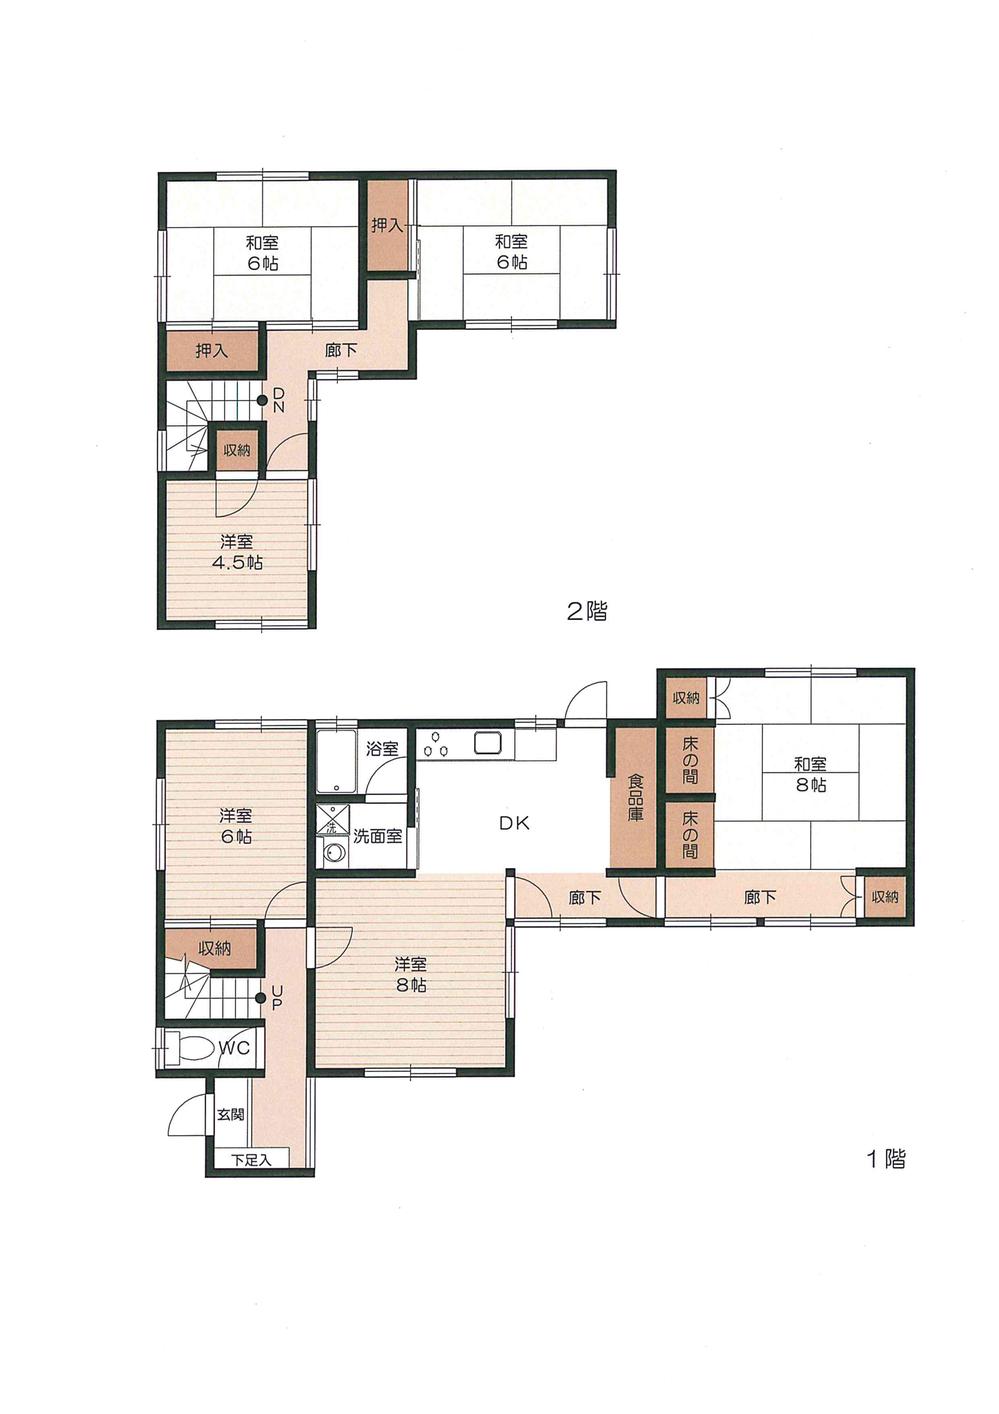 Floor plan. 17.5 million yen, 6DK, Land area 240 sq m , Building area 114.09 sq m